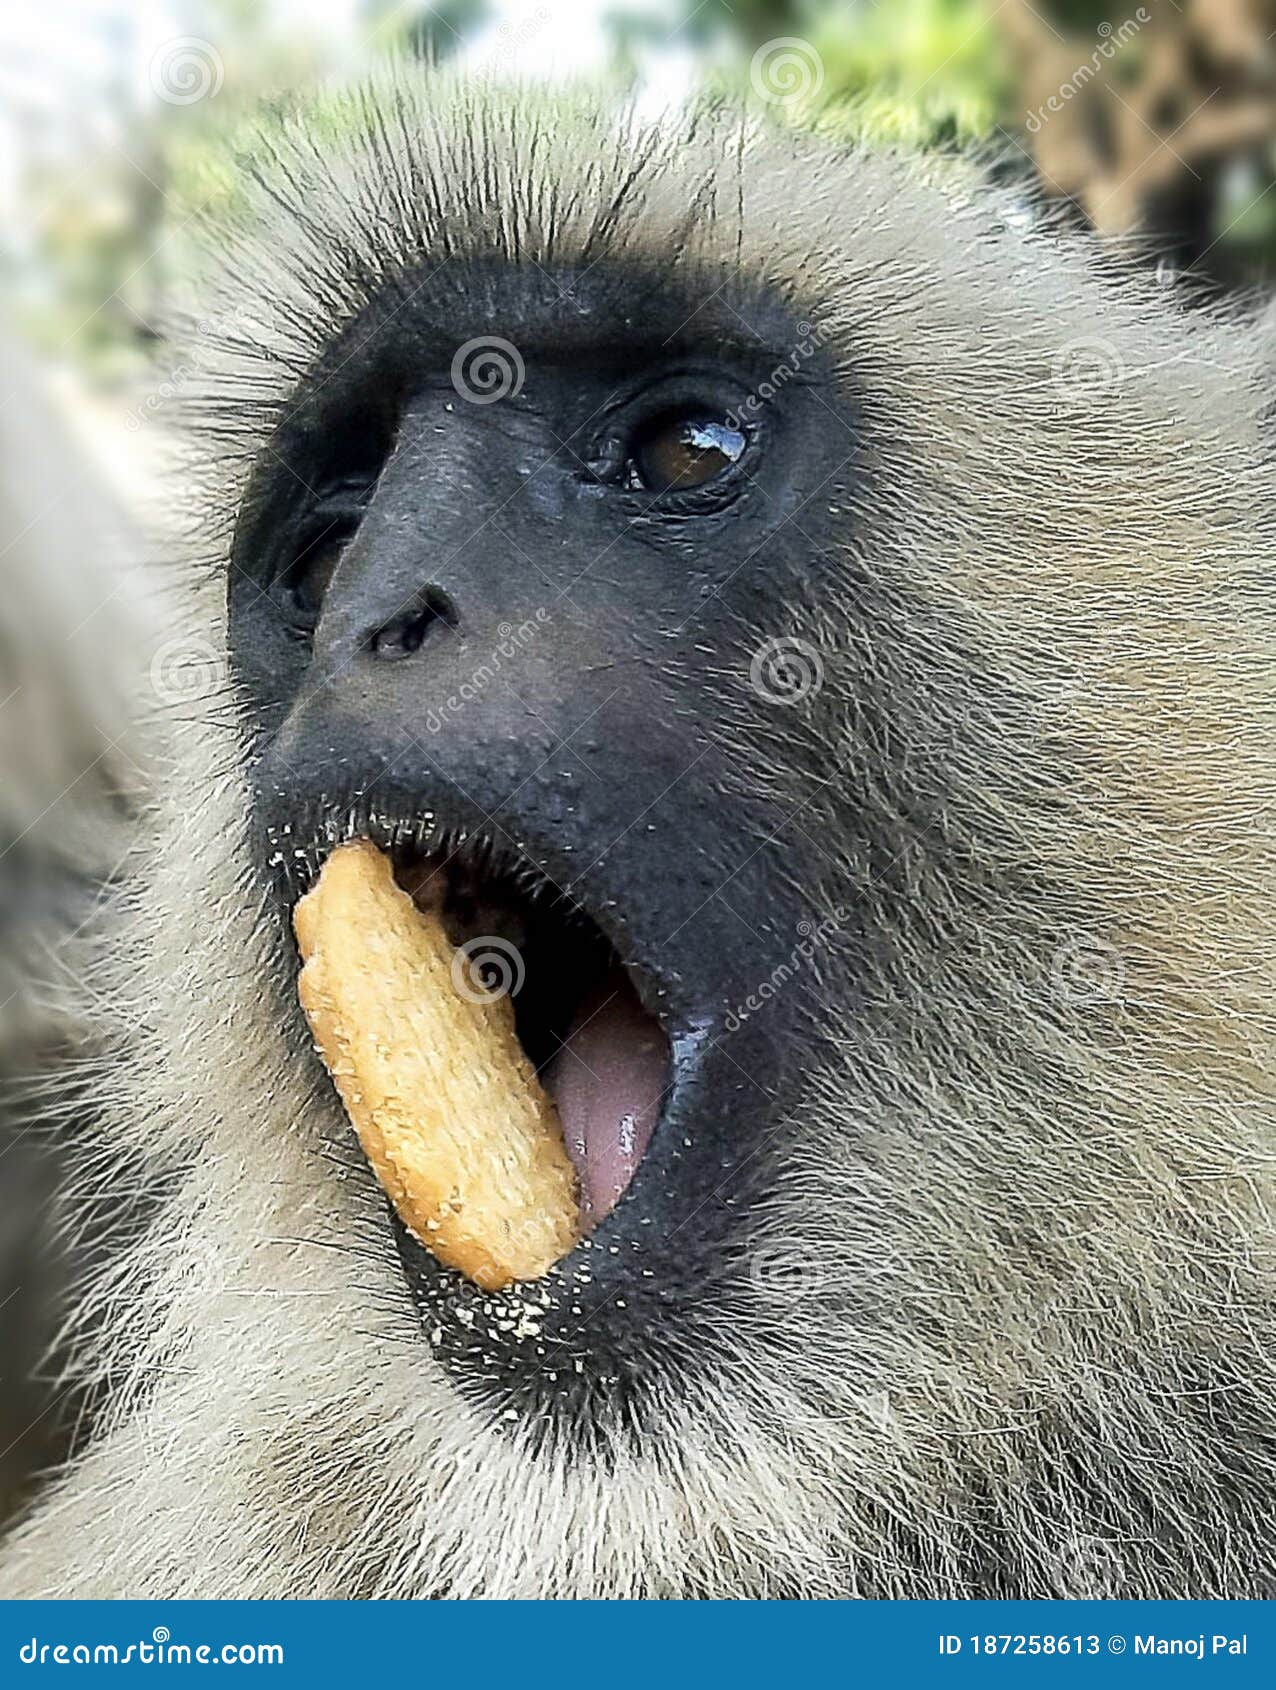 Macacos engraçados foto de stock. Imagem de tailândia - 58005822